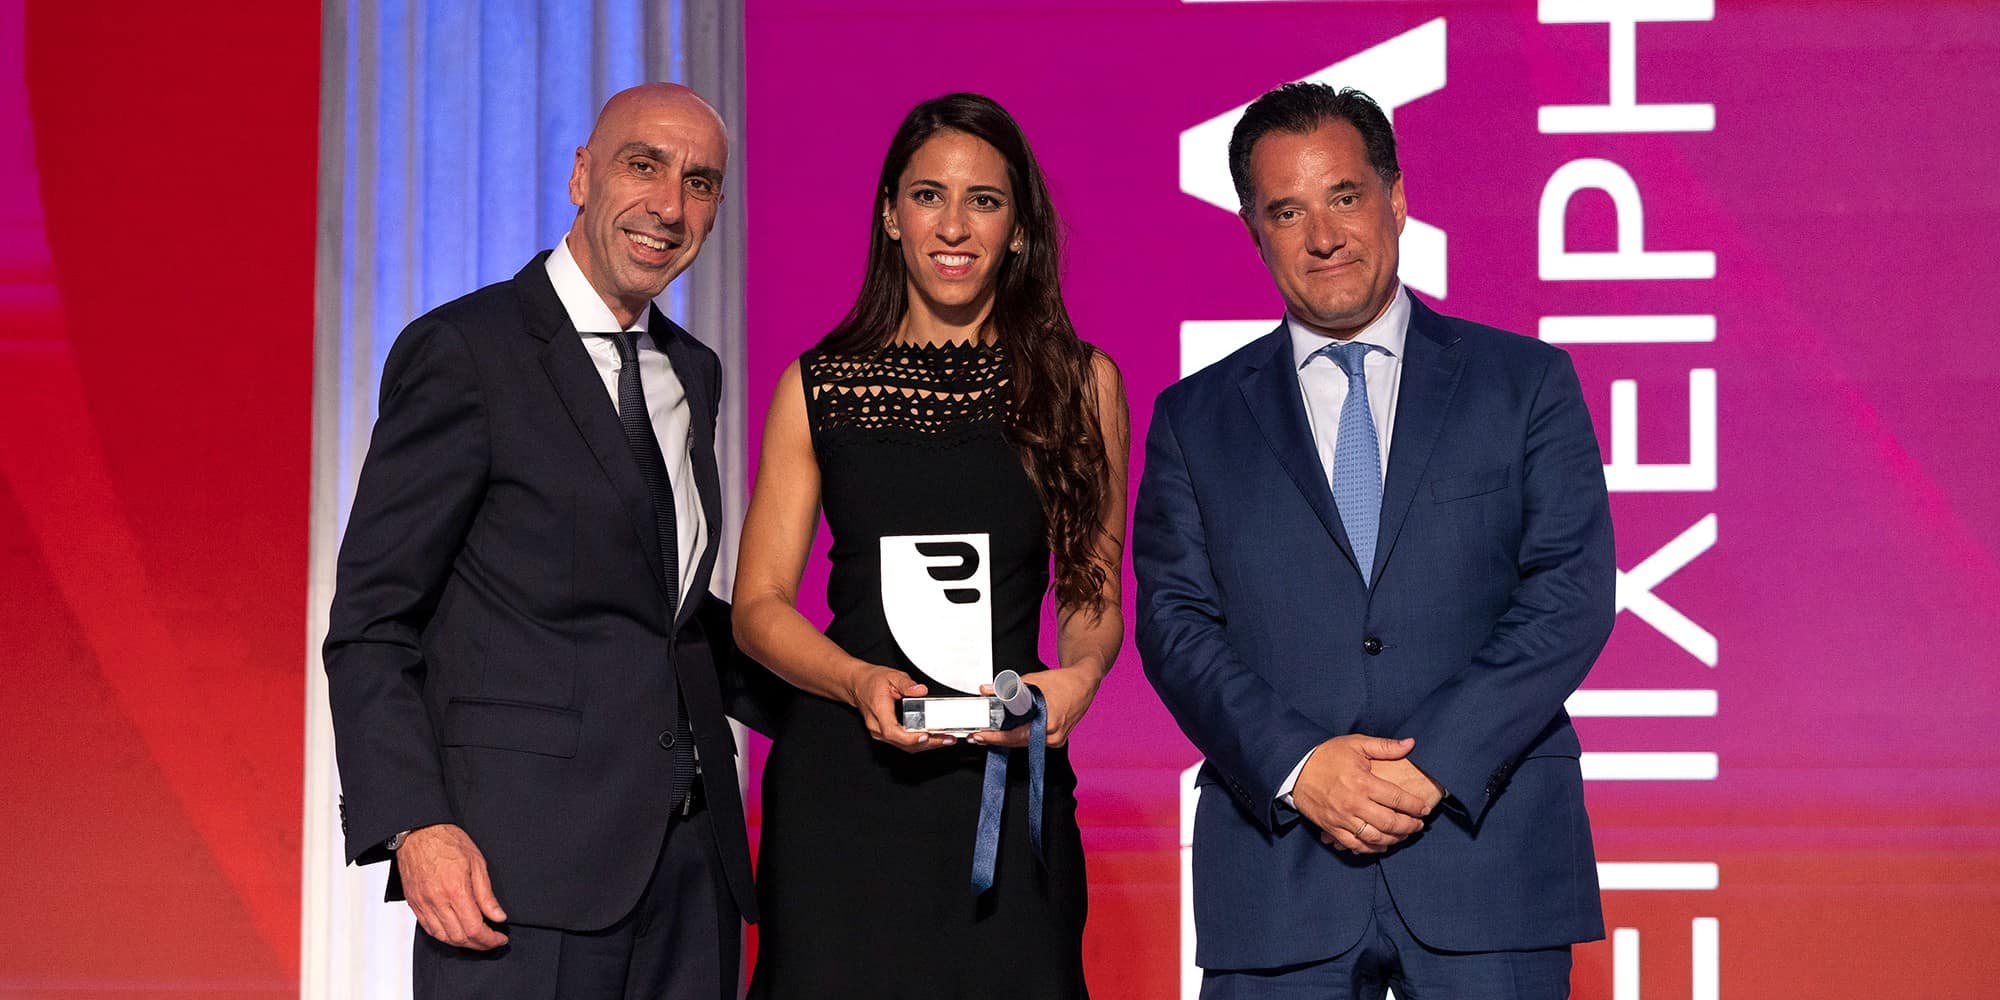 Βραβεία ΕΒΕΑ: Η Αλεξάνδρα Δασκαλοπούλου βραβεύτηκε ως η γυναίκα επιχειρηματίας της χρονιάς 2022